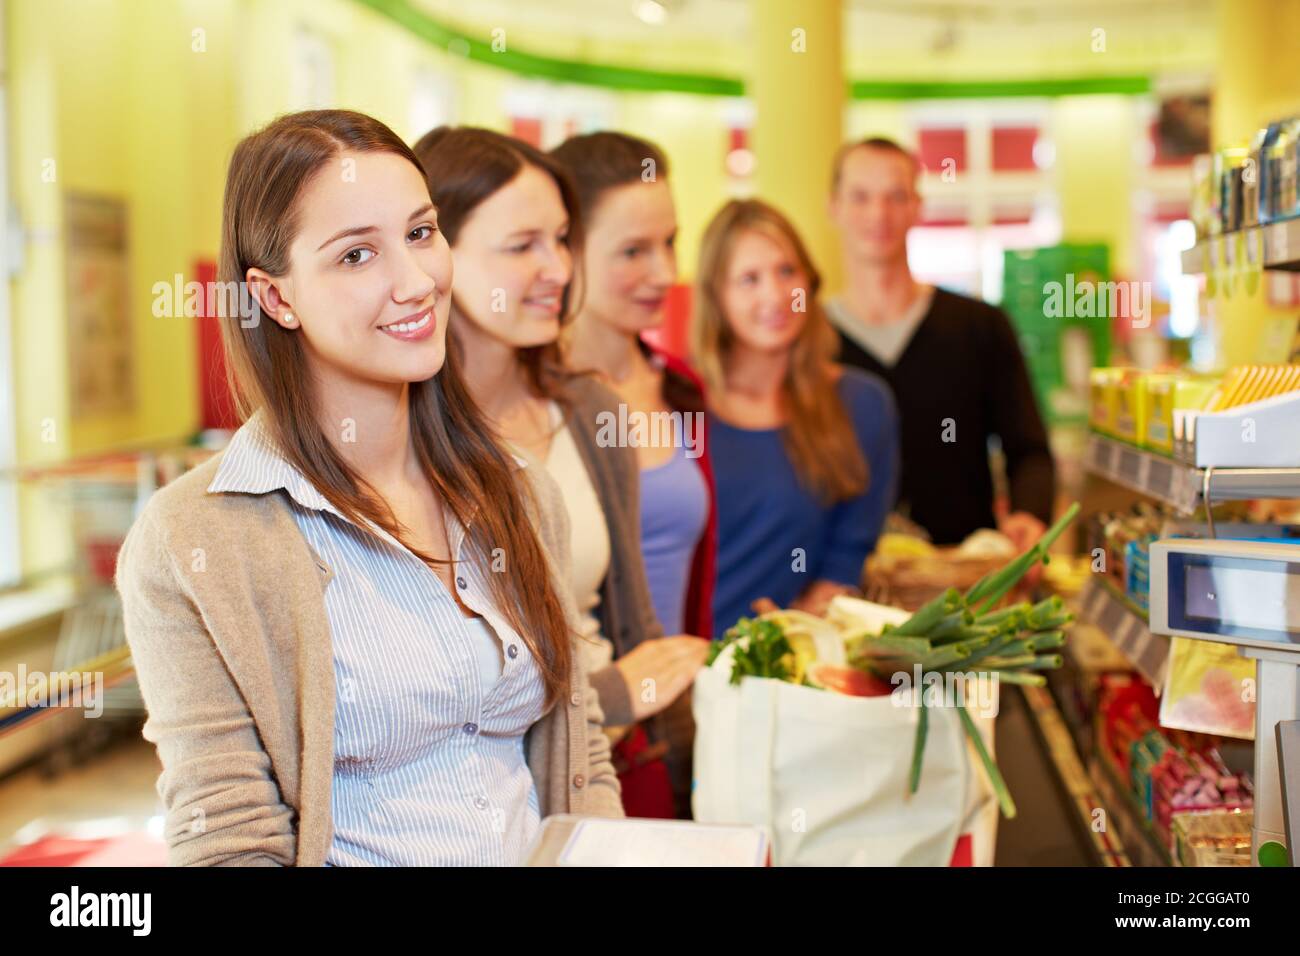 Une femme souriante se tient dans une file d'attente à la caisse un supermarché Banque D'Images